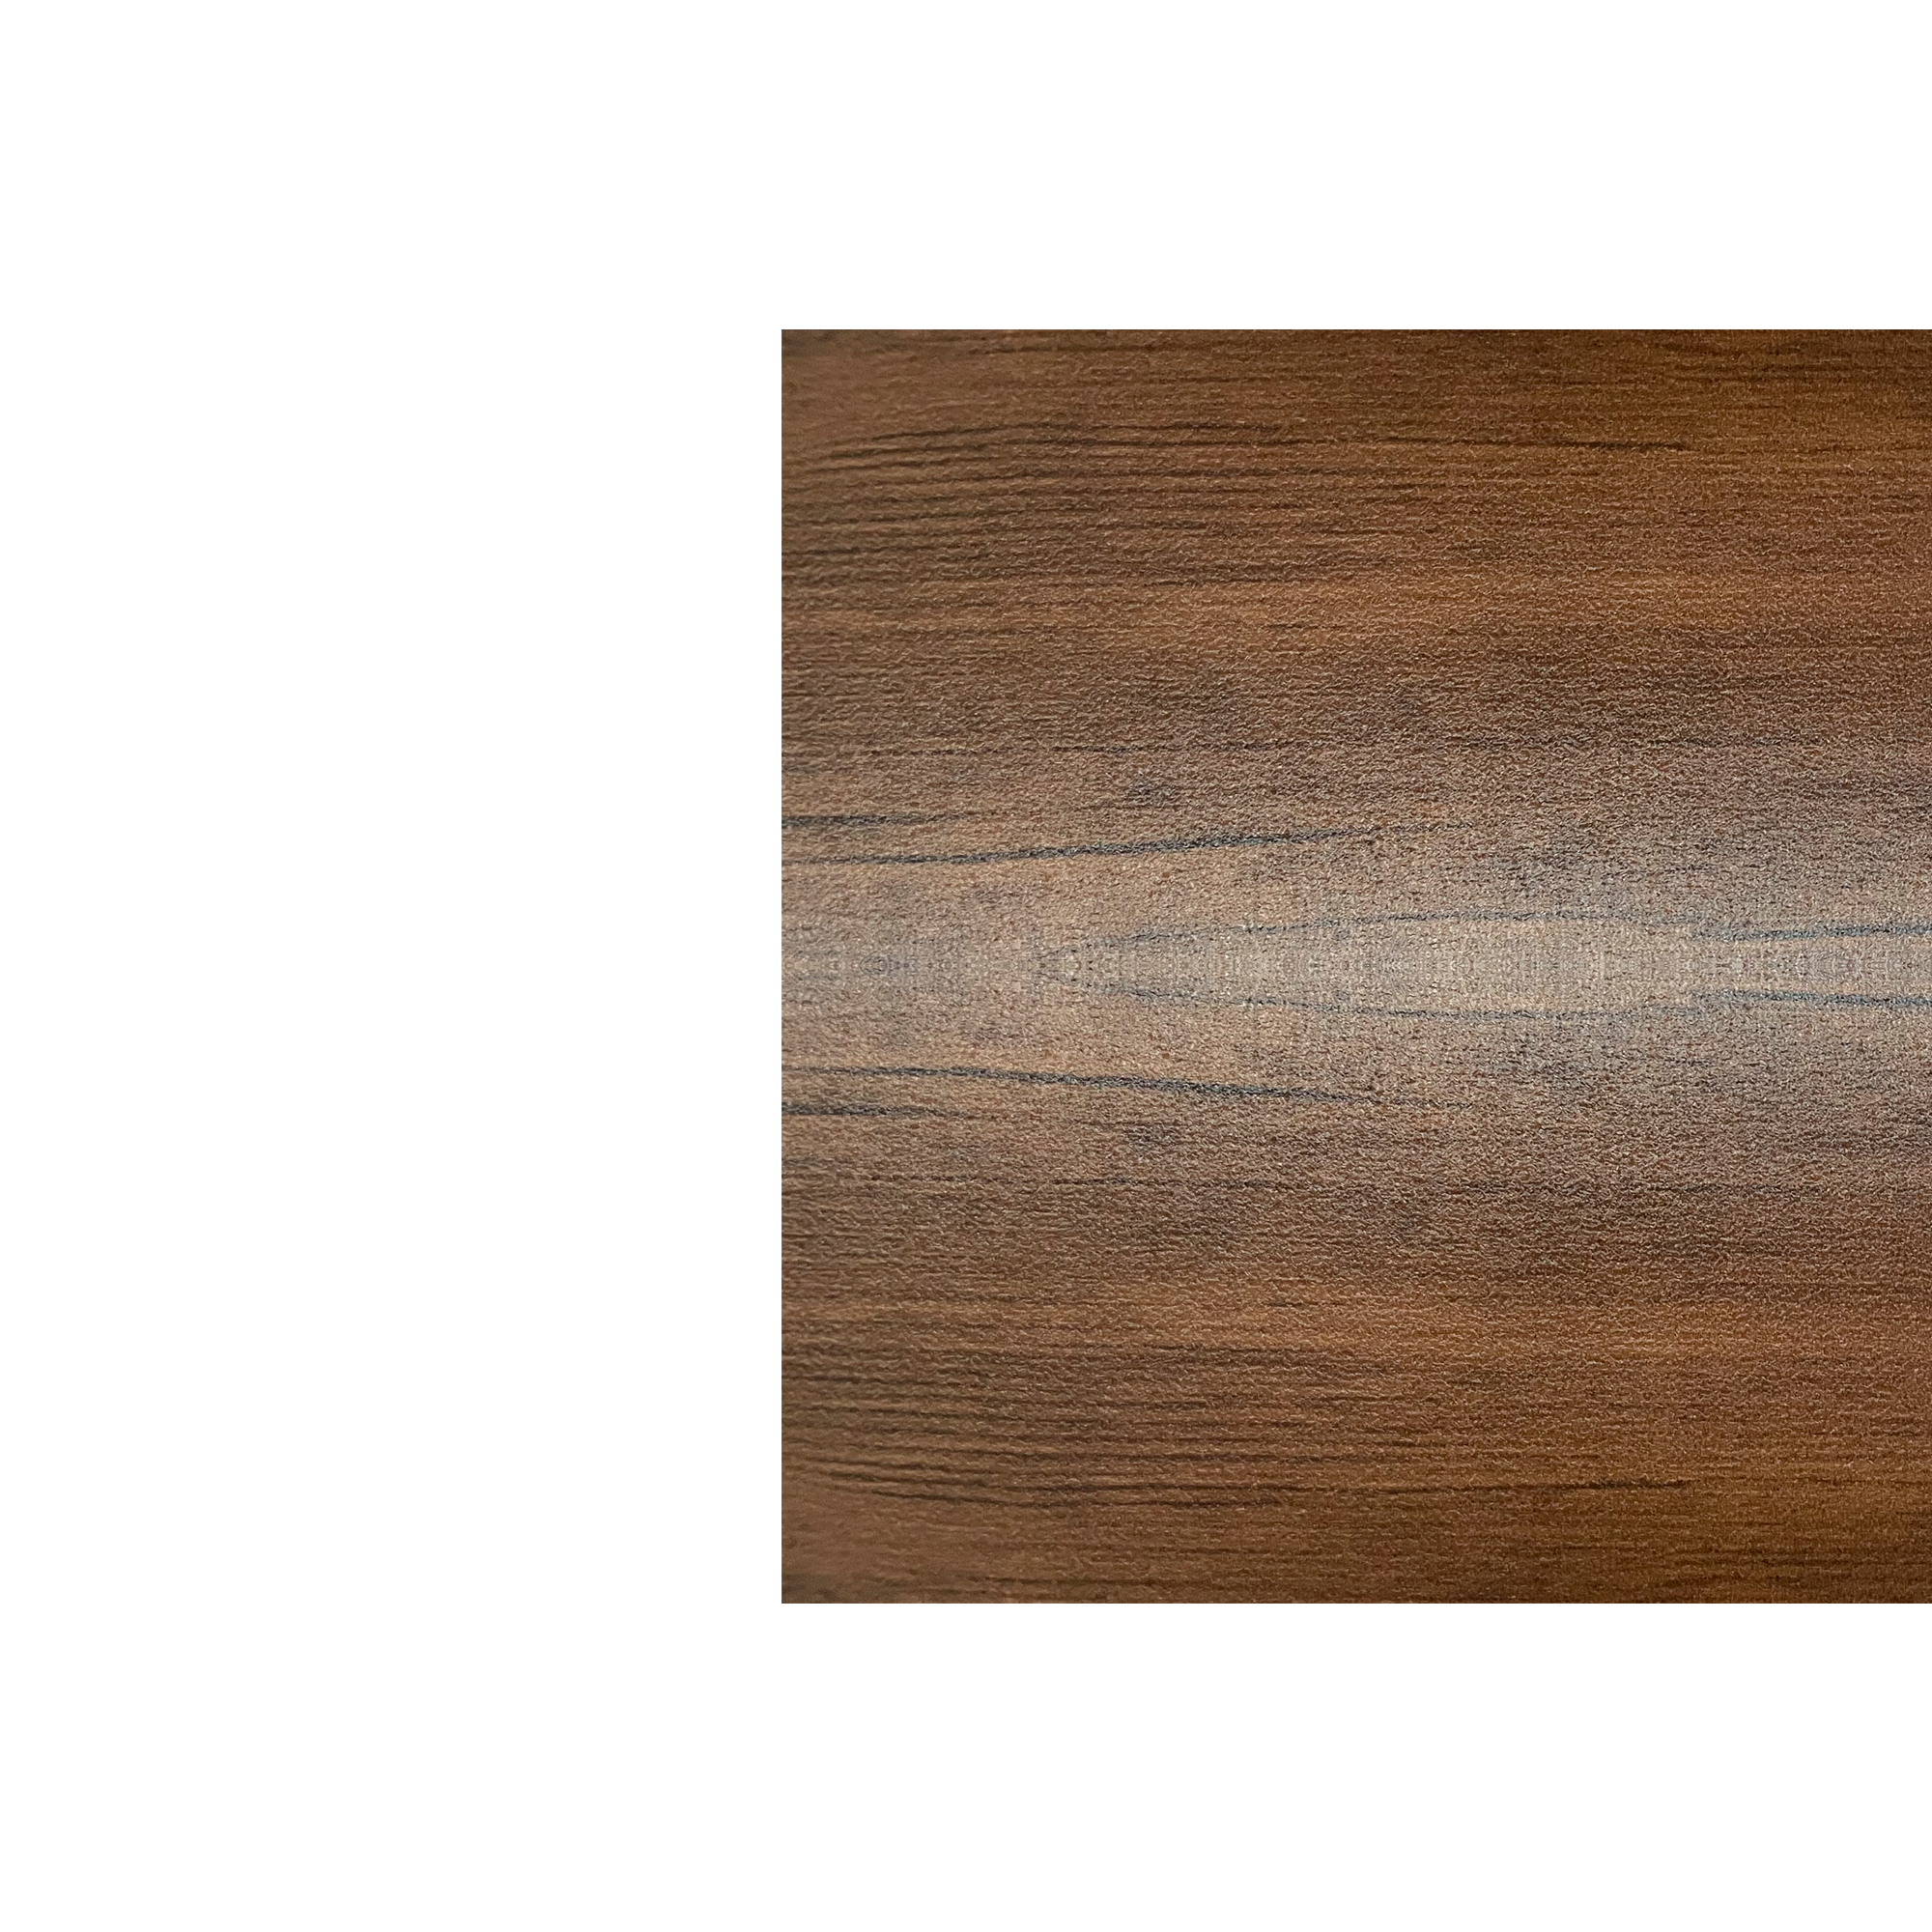 Планка угла внутреннего сложного Экобрус Античный дуб 0,45 мм Printech Доборные элементы для сайдинга Кровля Сервис